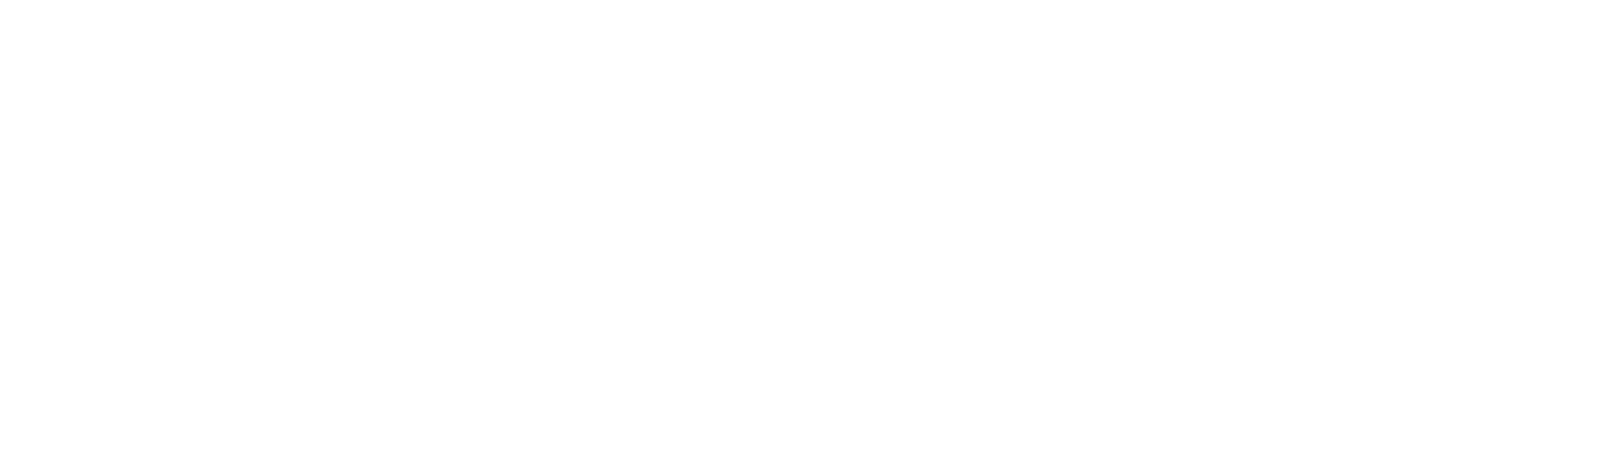 Cryomasters